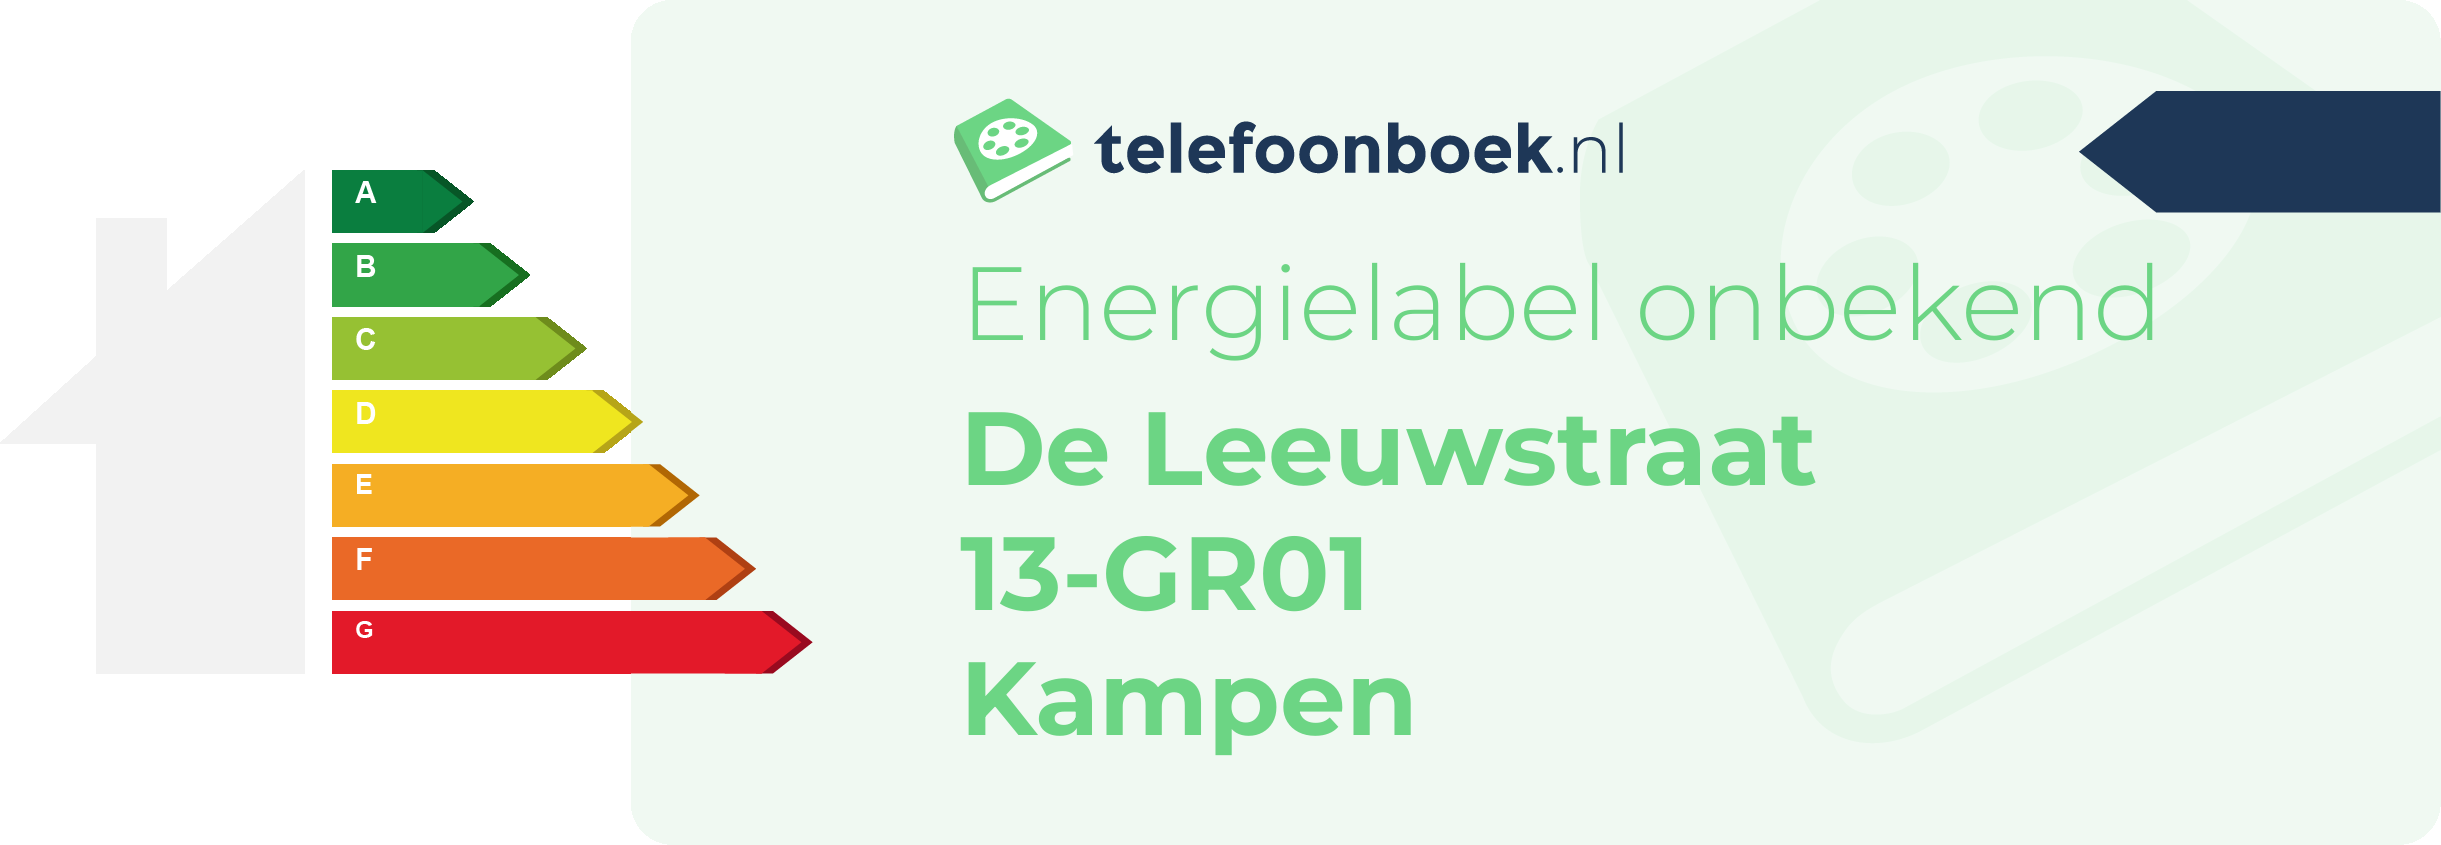 Energielabel De Leeuwstraat 13-GR01 Kampen